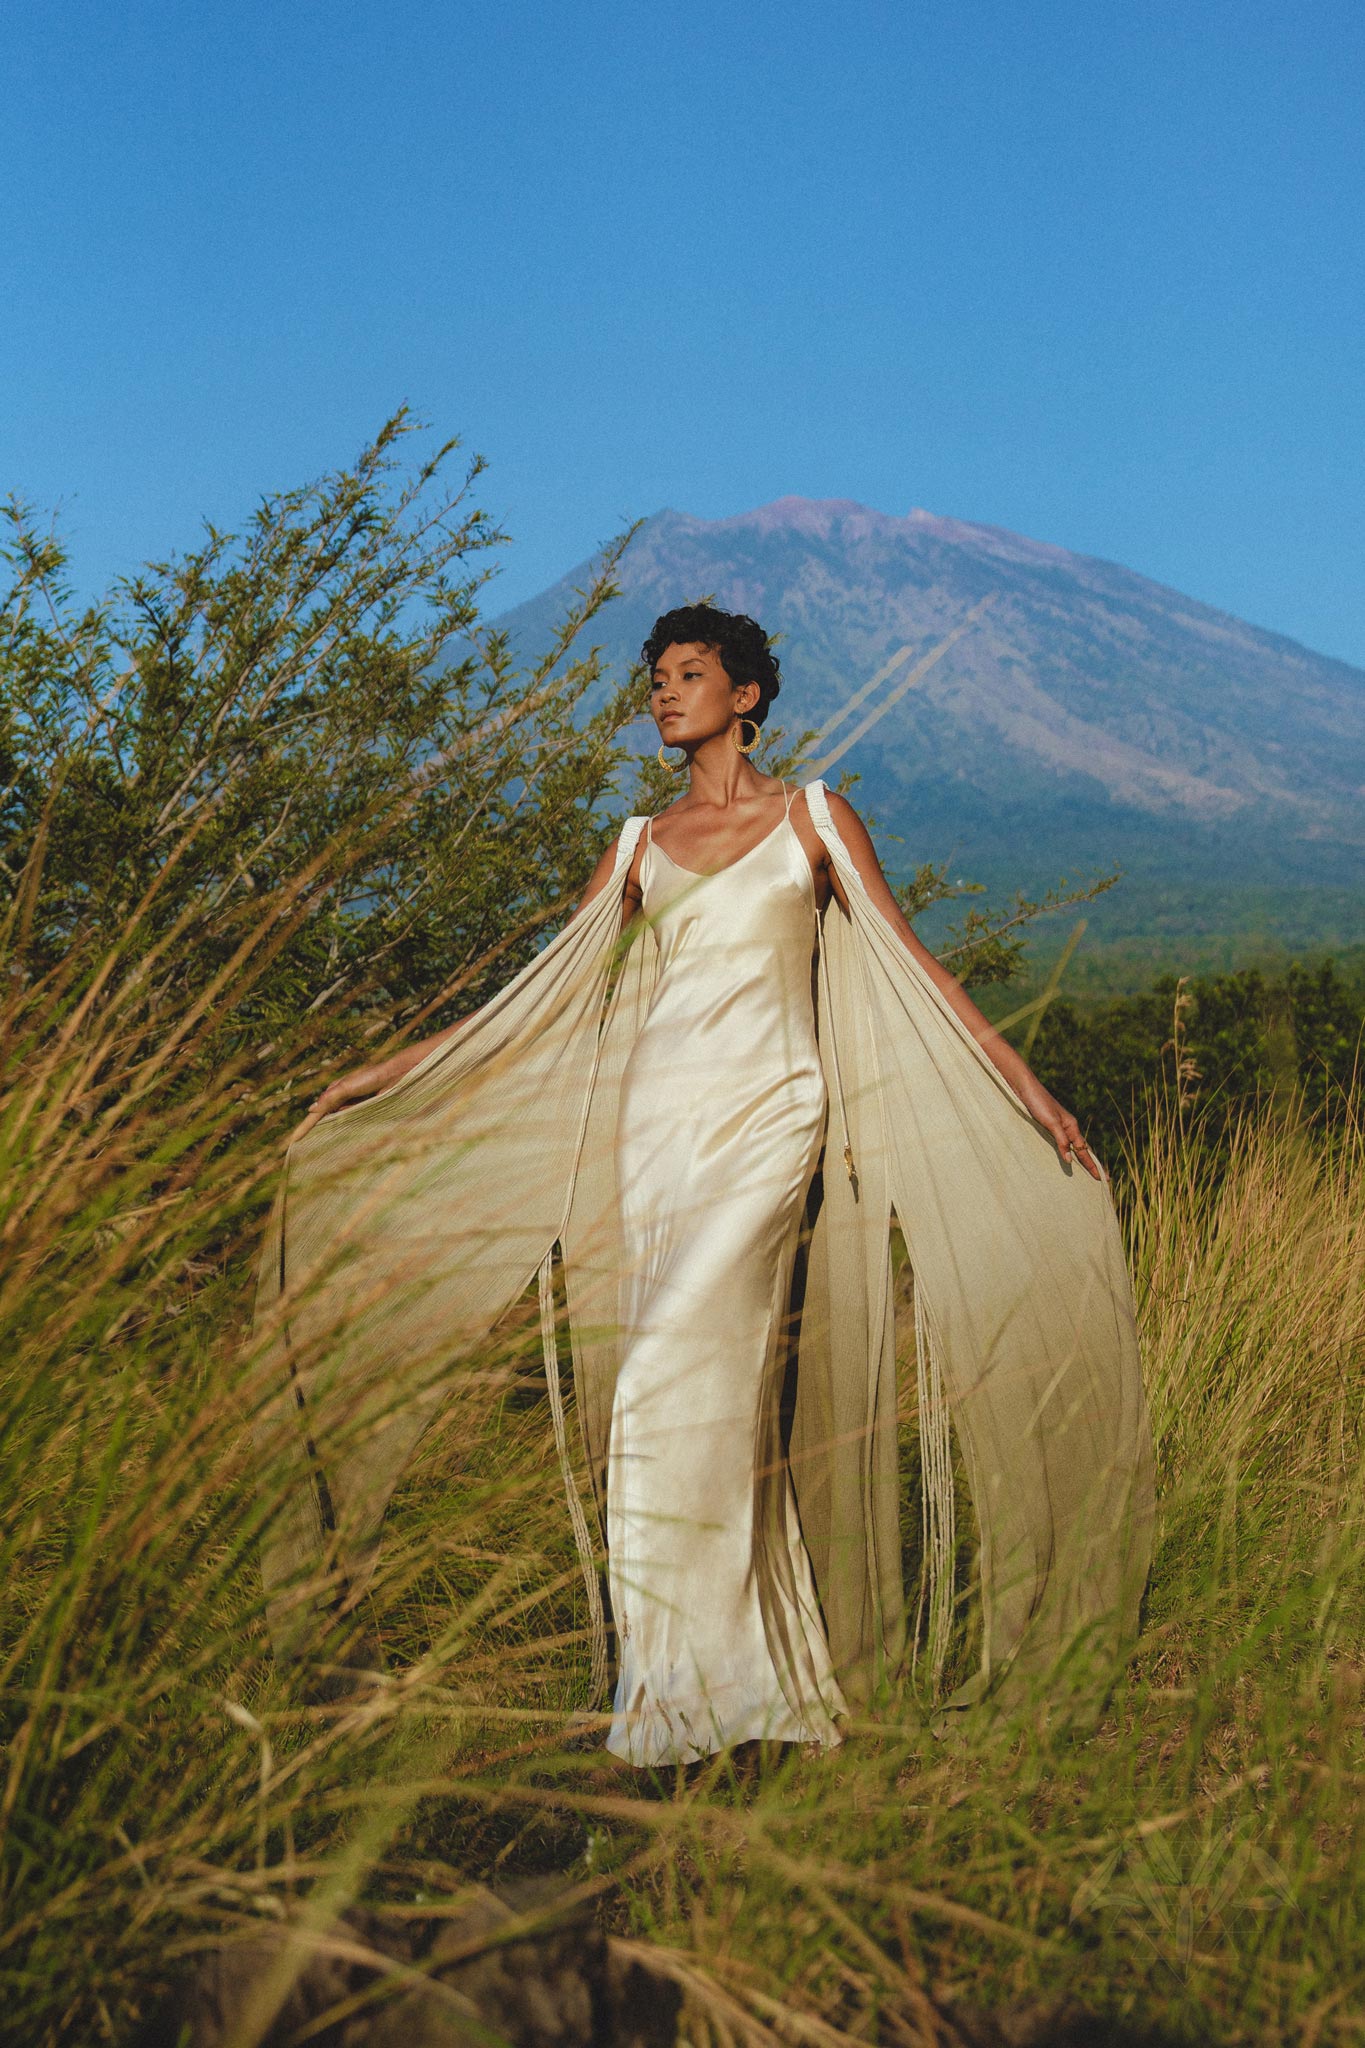 Boho Macrame Bridesmaid Dress • Ombre Sky Blue Dress